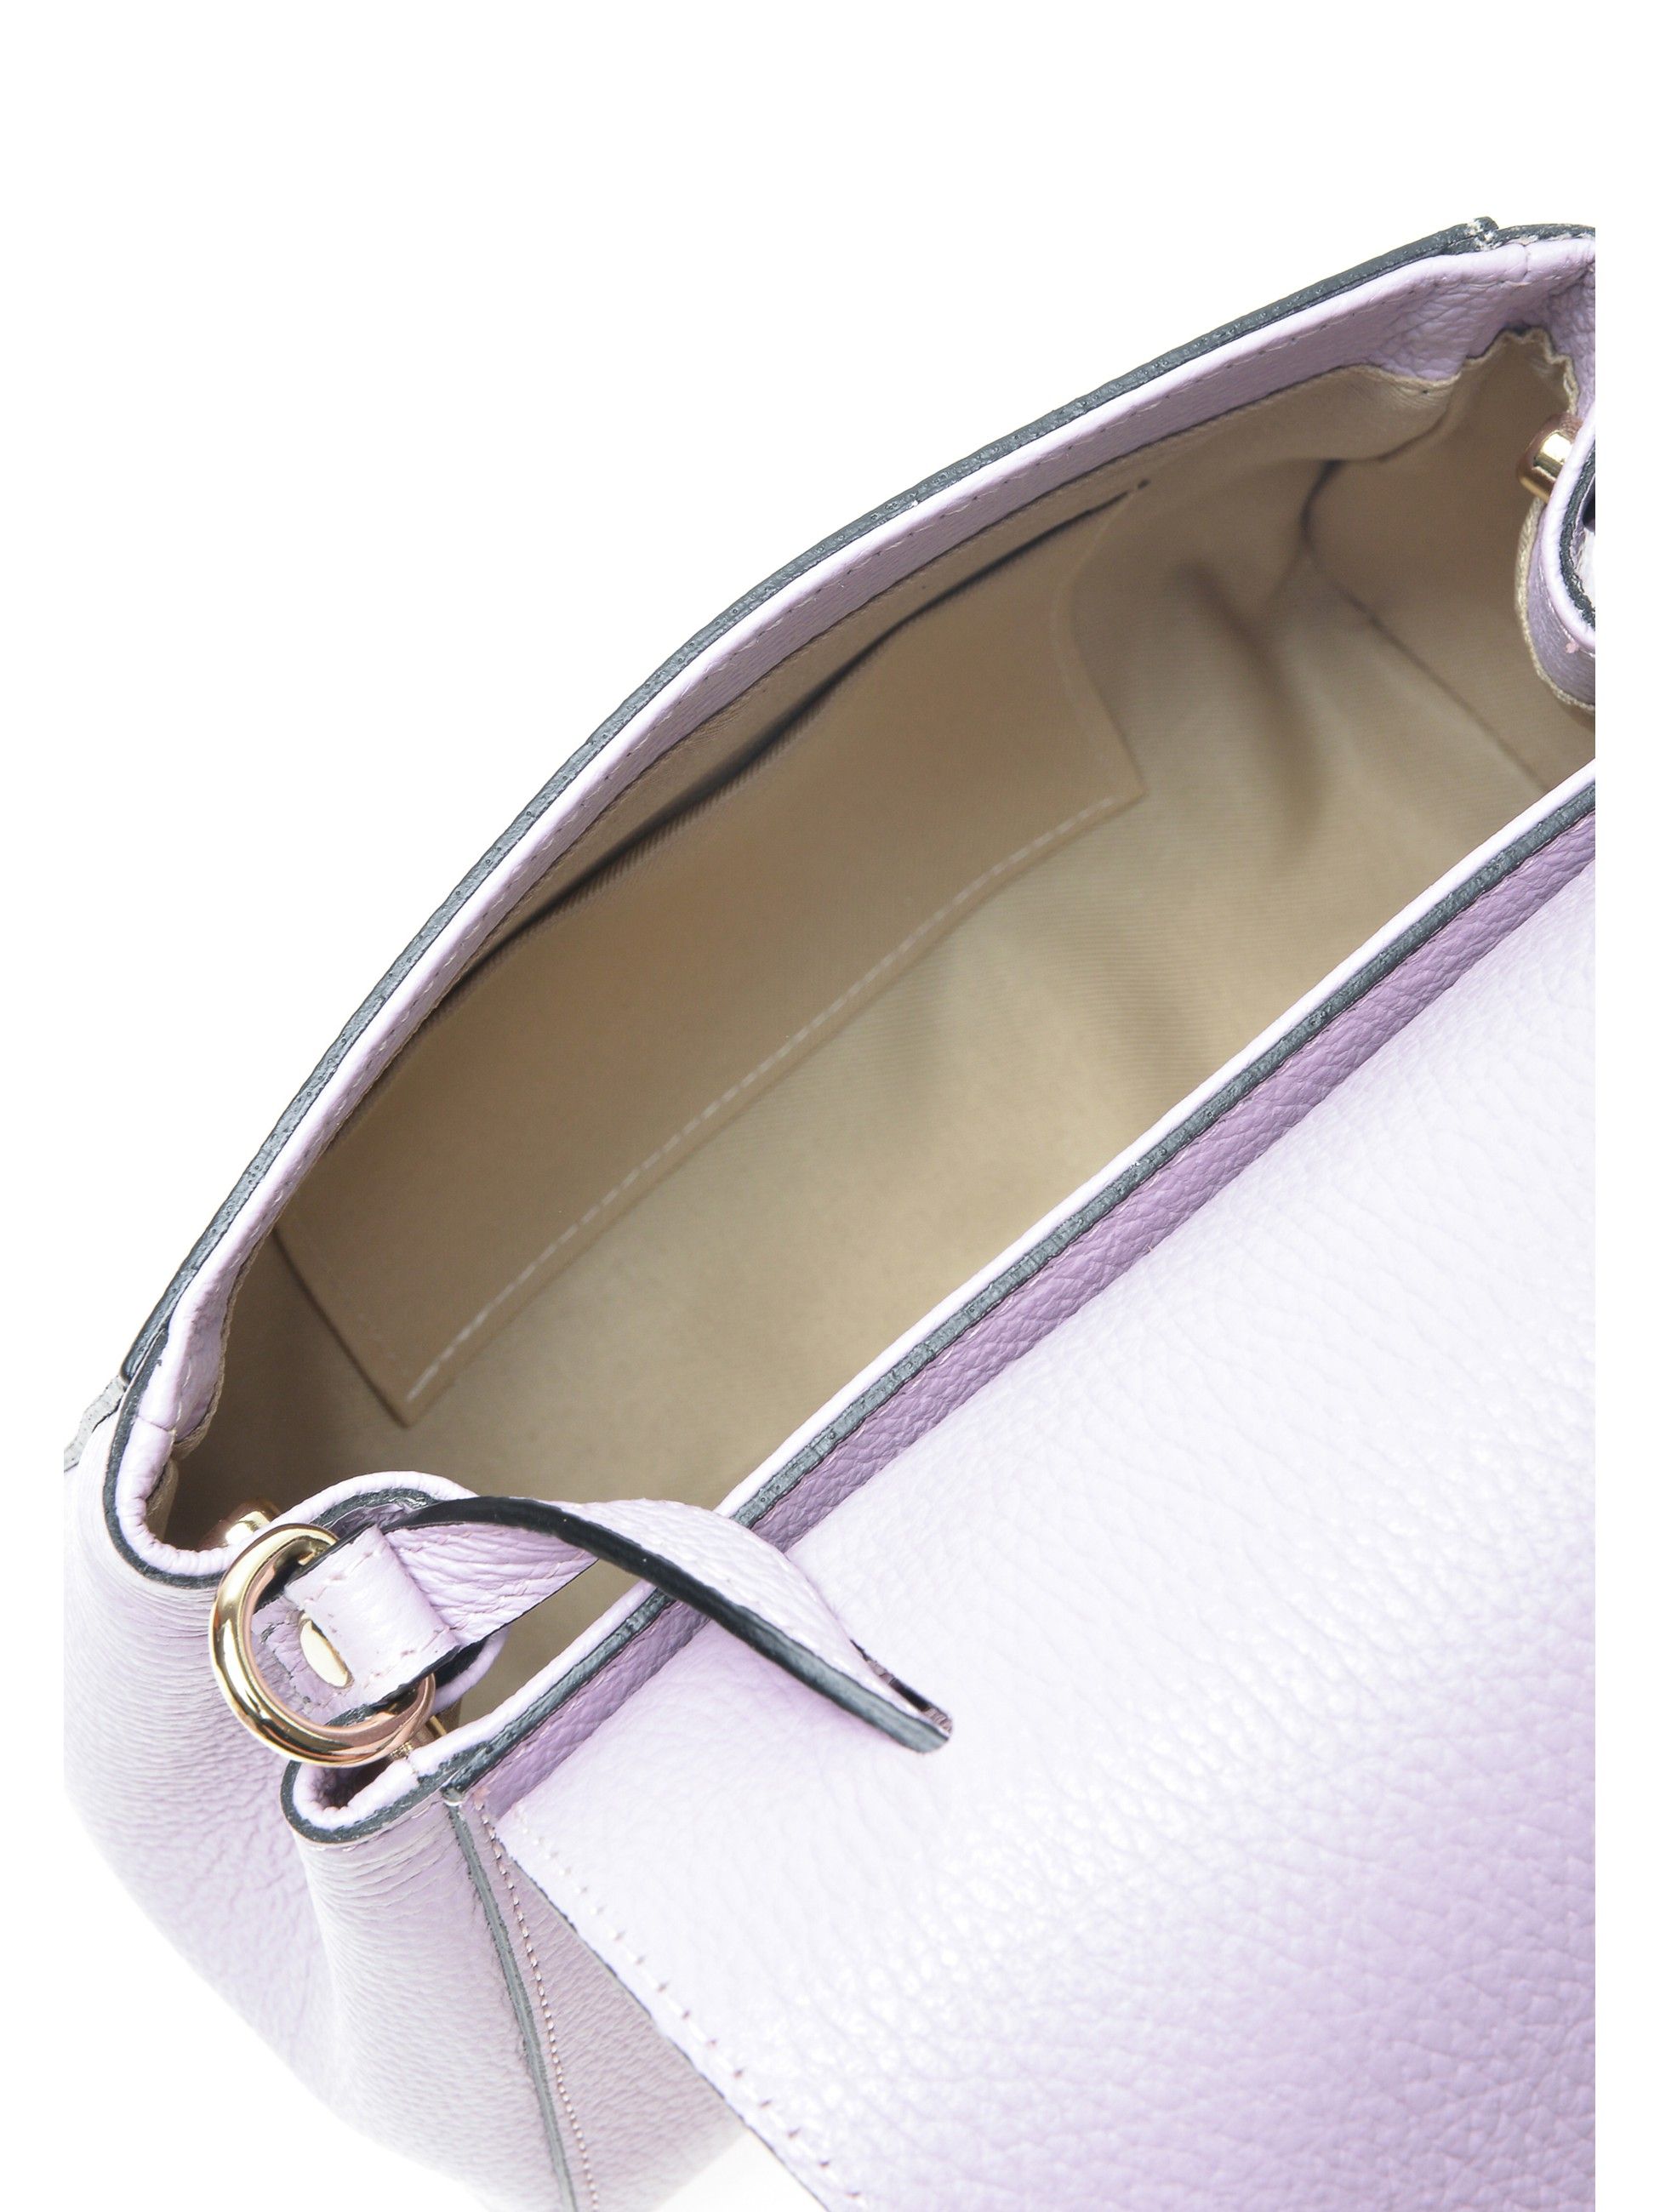 Handbag
100% cow leather
Flap over magnetic closure
Inner pocket
Dimensions (L): 20x22.5x7.5 cm
Handle: 18 cm
Shoulder strap: 120 cm adjustable